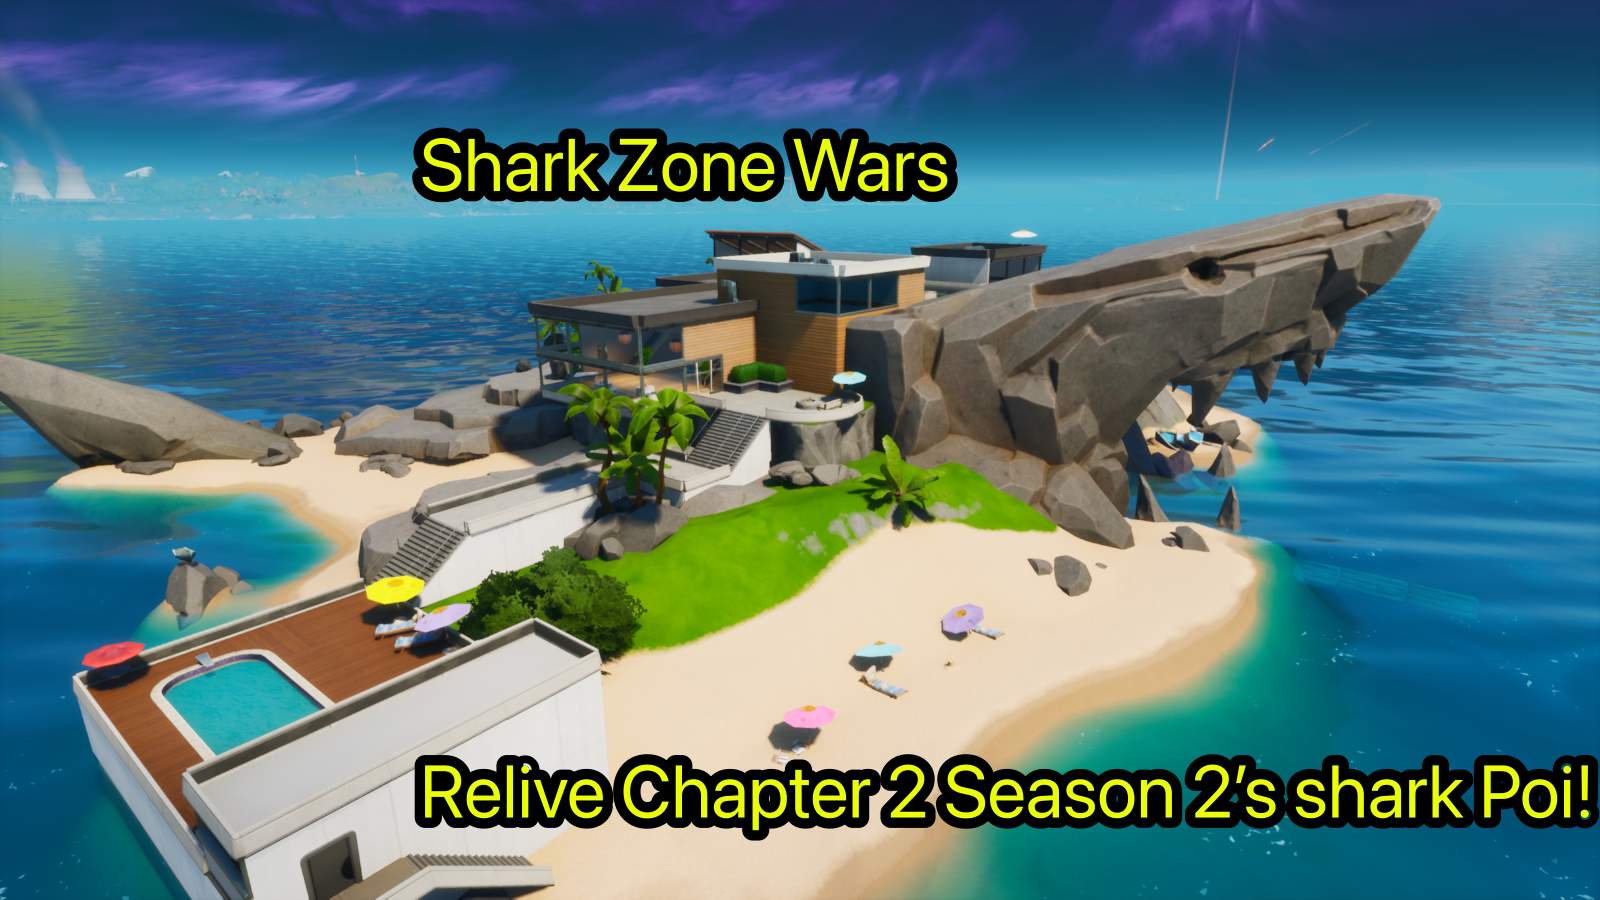 OG THE SHARK - ZONE WARS 1493-0404-5914 by vip - Fortnite Creative Map Code  